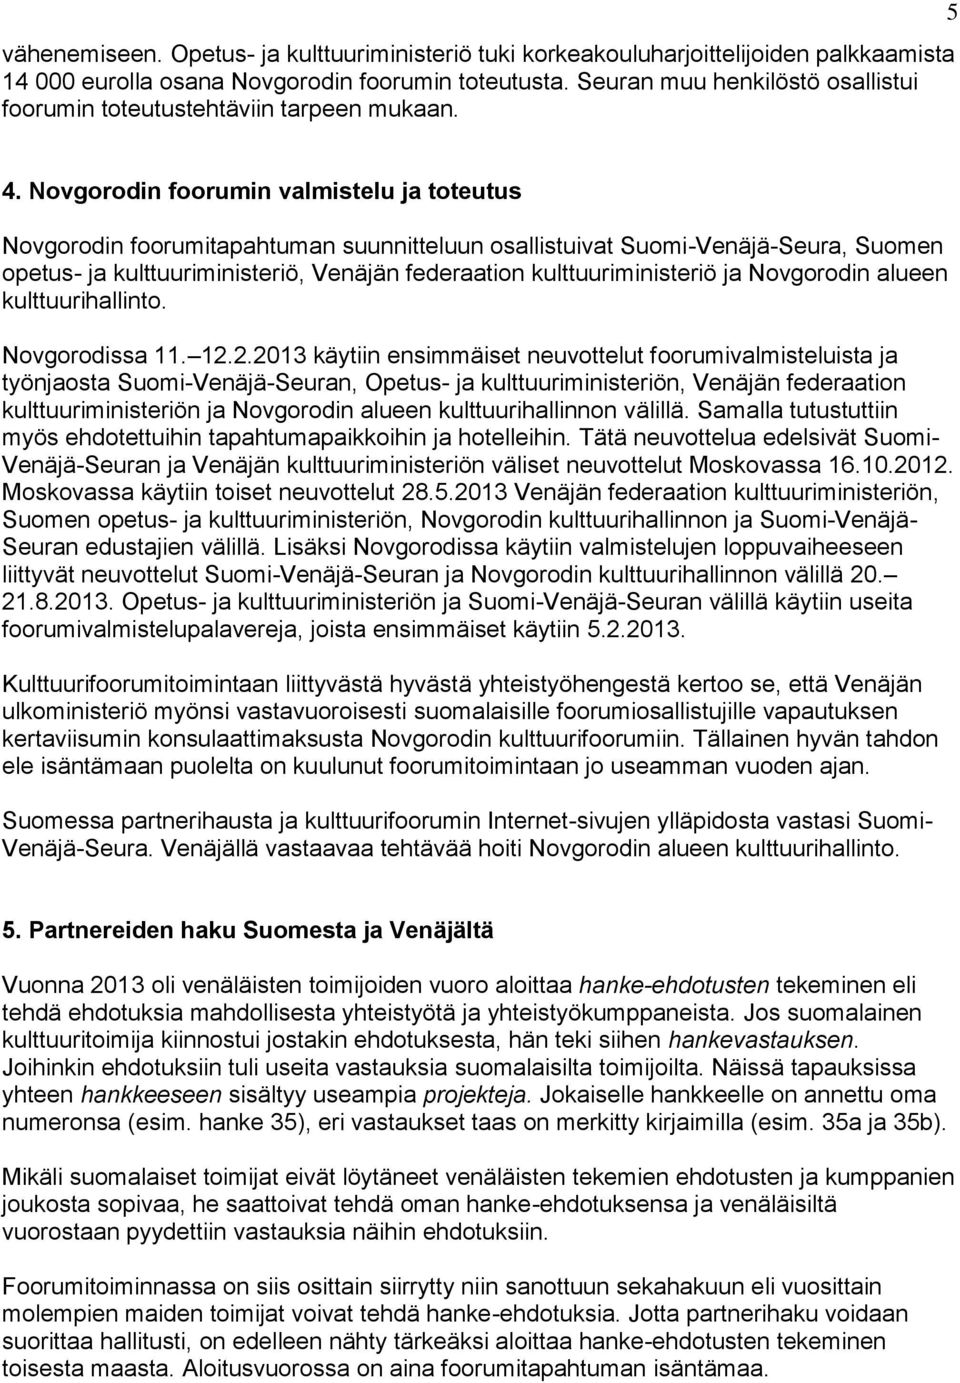 Novgorodin foorumin valmistelu ja toteutus Novgorodin foorumitapahtuman suunnitteluun osallistuivat Suomi-Venäjä-Seura, Suomen opetus- ja kulttuuriministeriö, Venäjän federaation kulttuuriministeriö